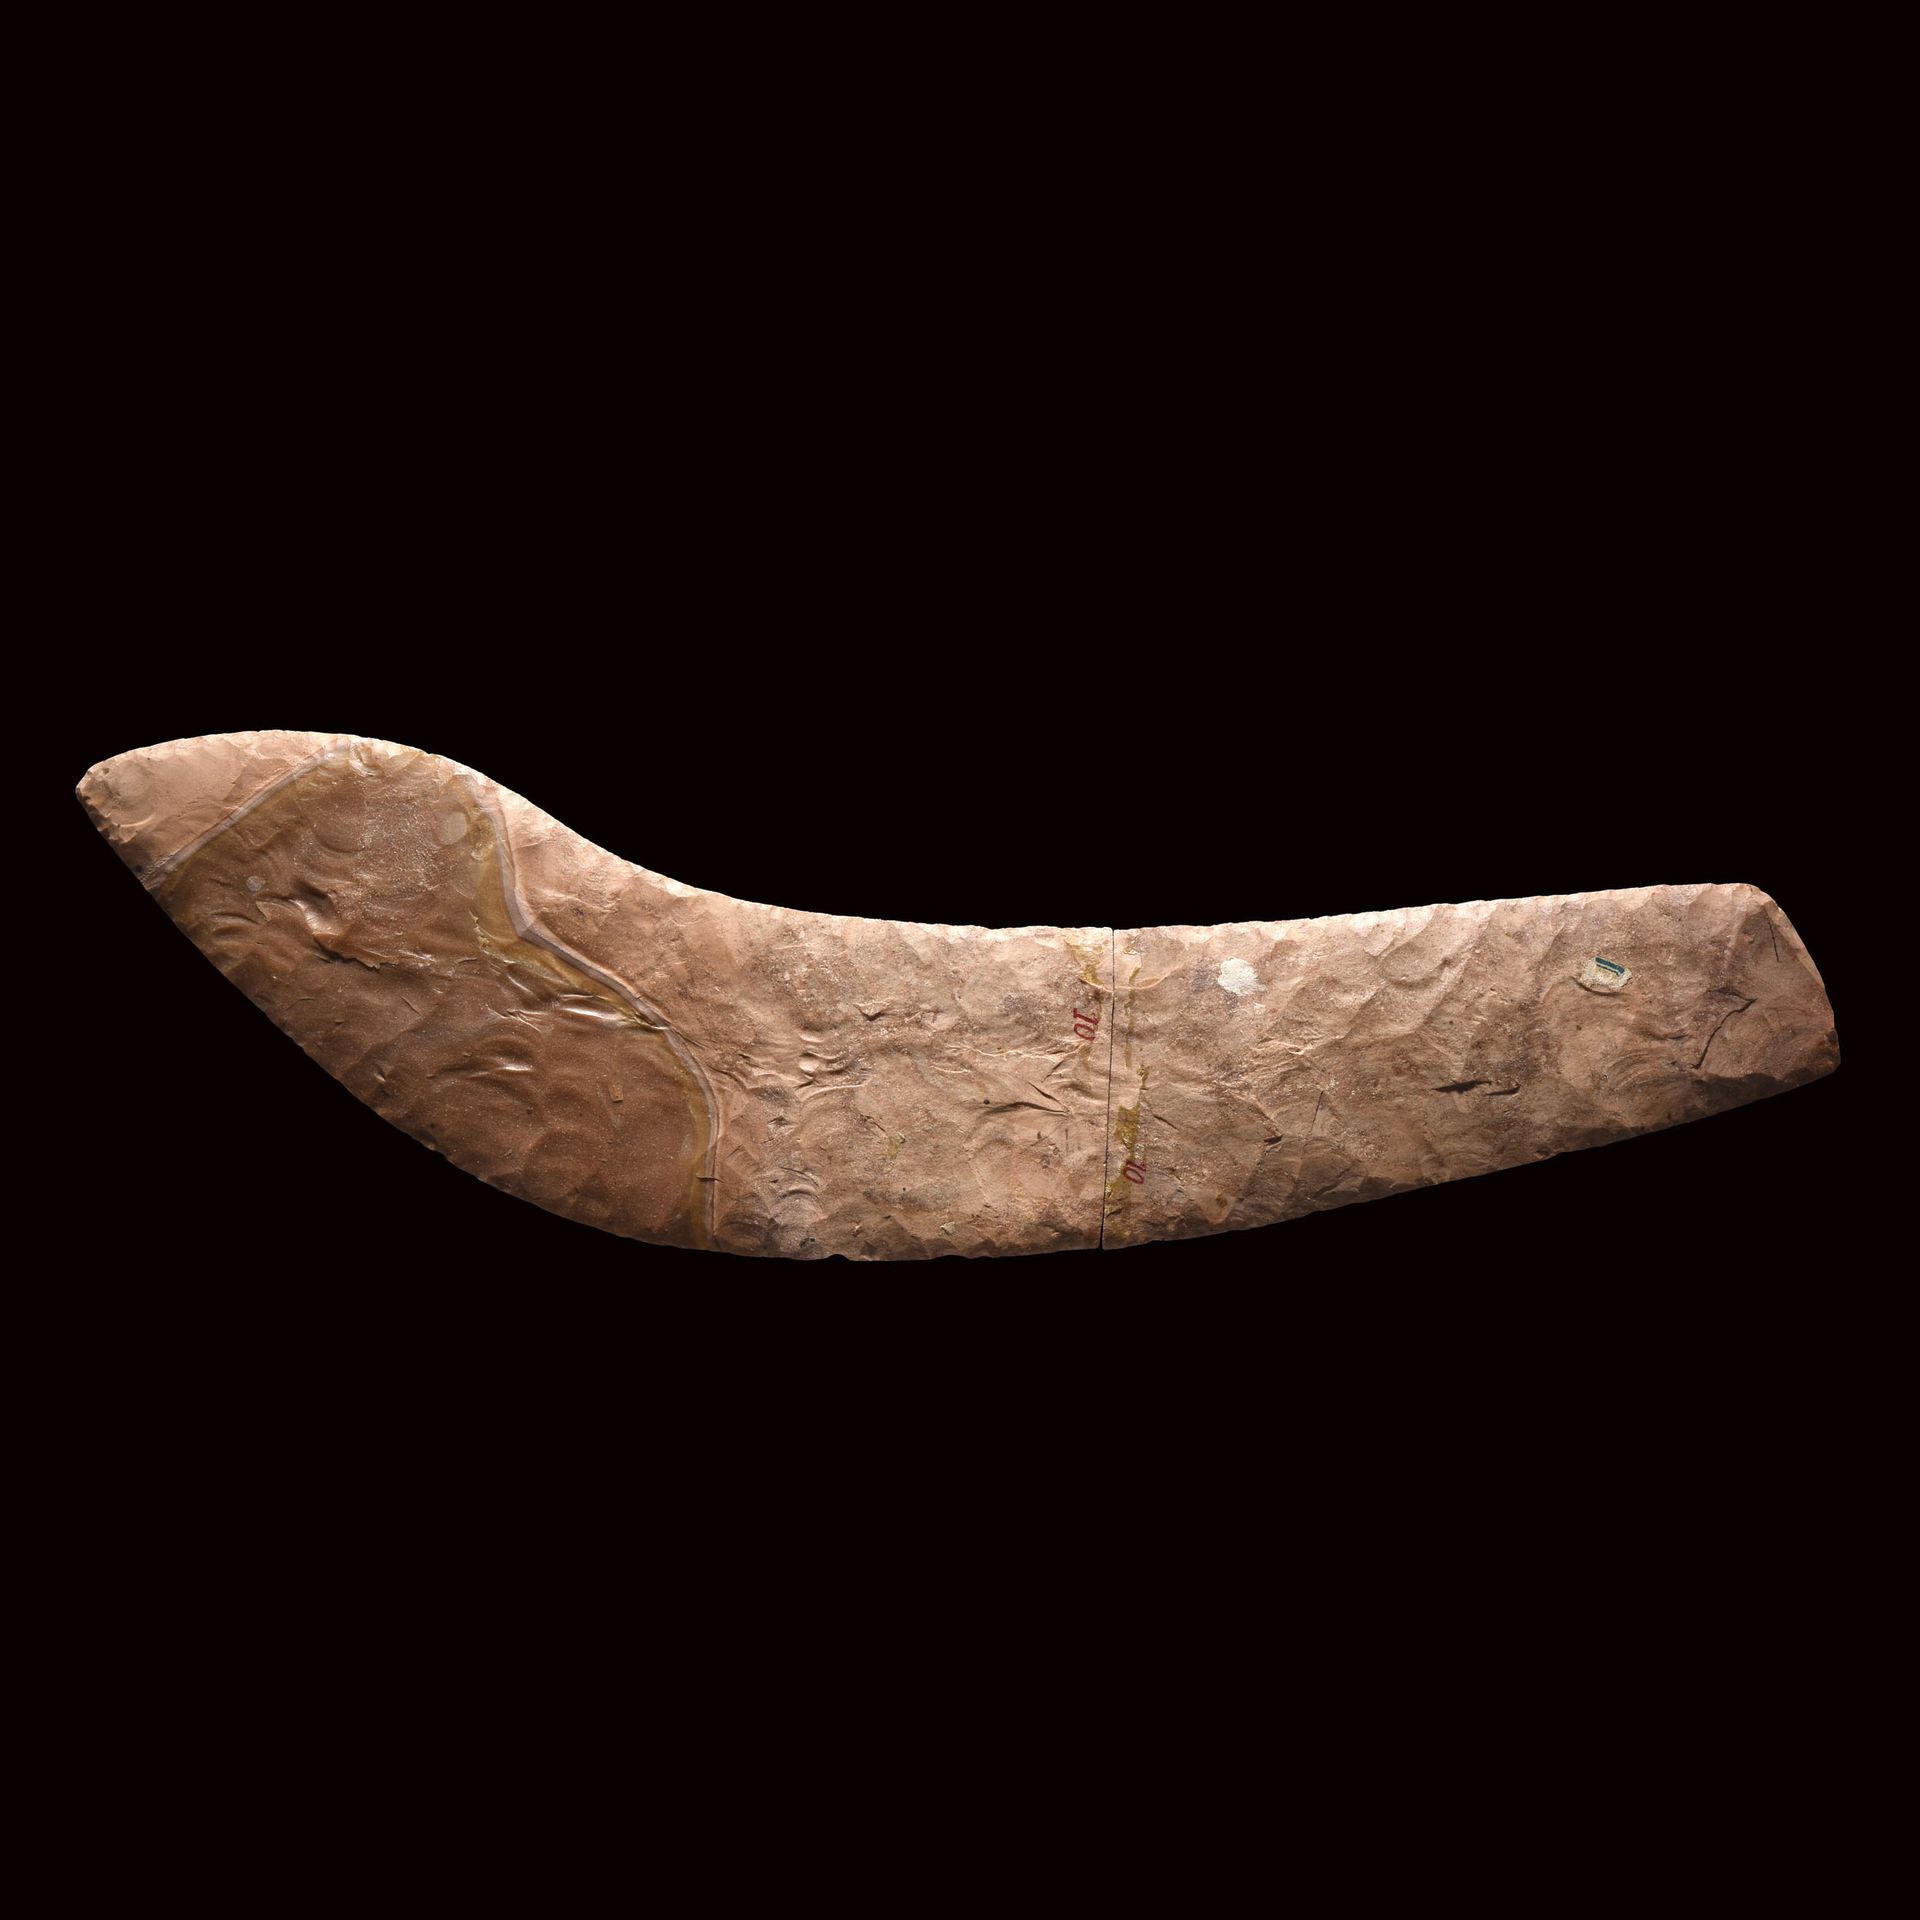 Null KLINGE EINES MESSERS

Ägypten, Naqada III, c. 3200-3000 v. Chr. 

Silex. In&hellip;